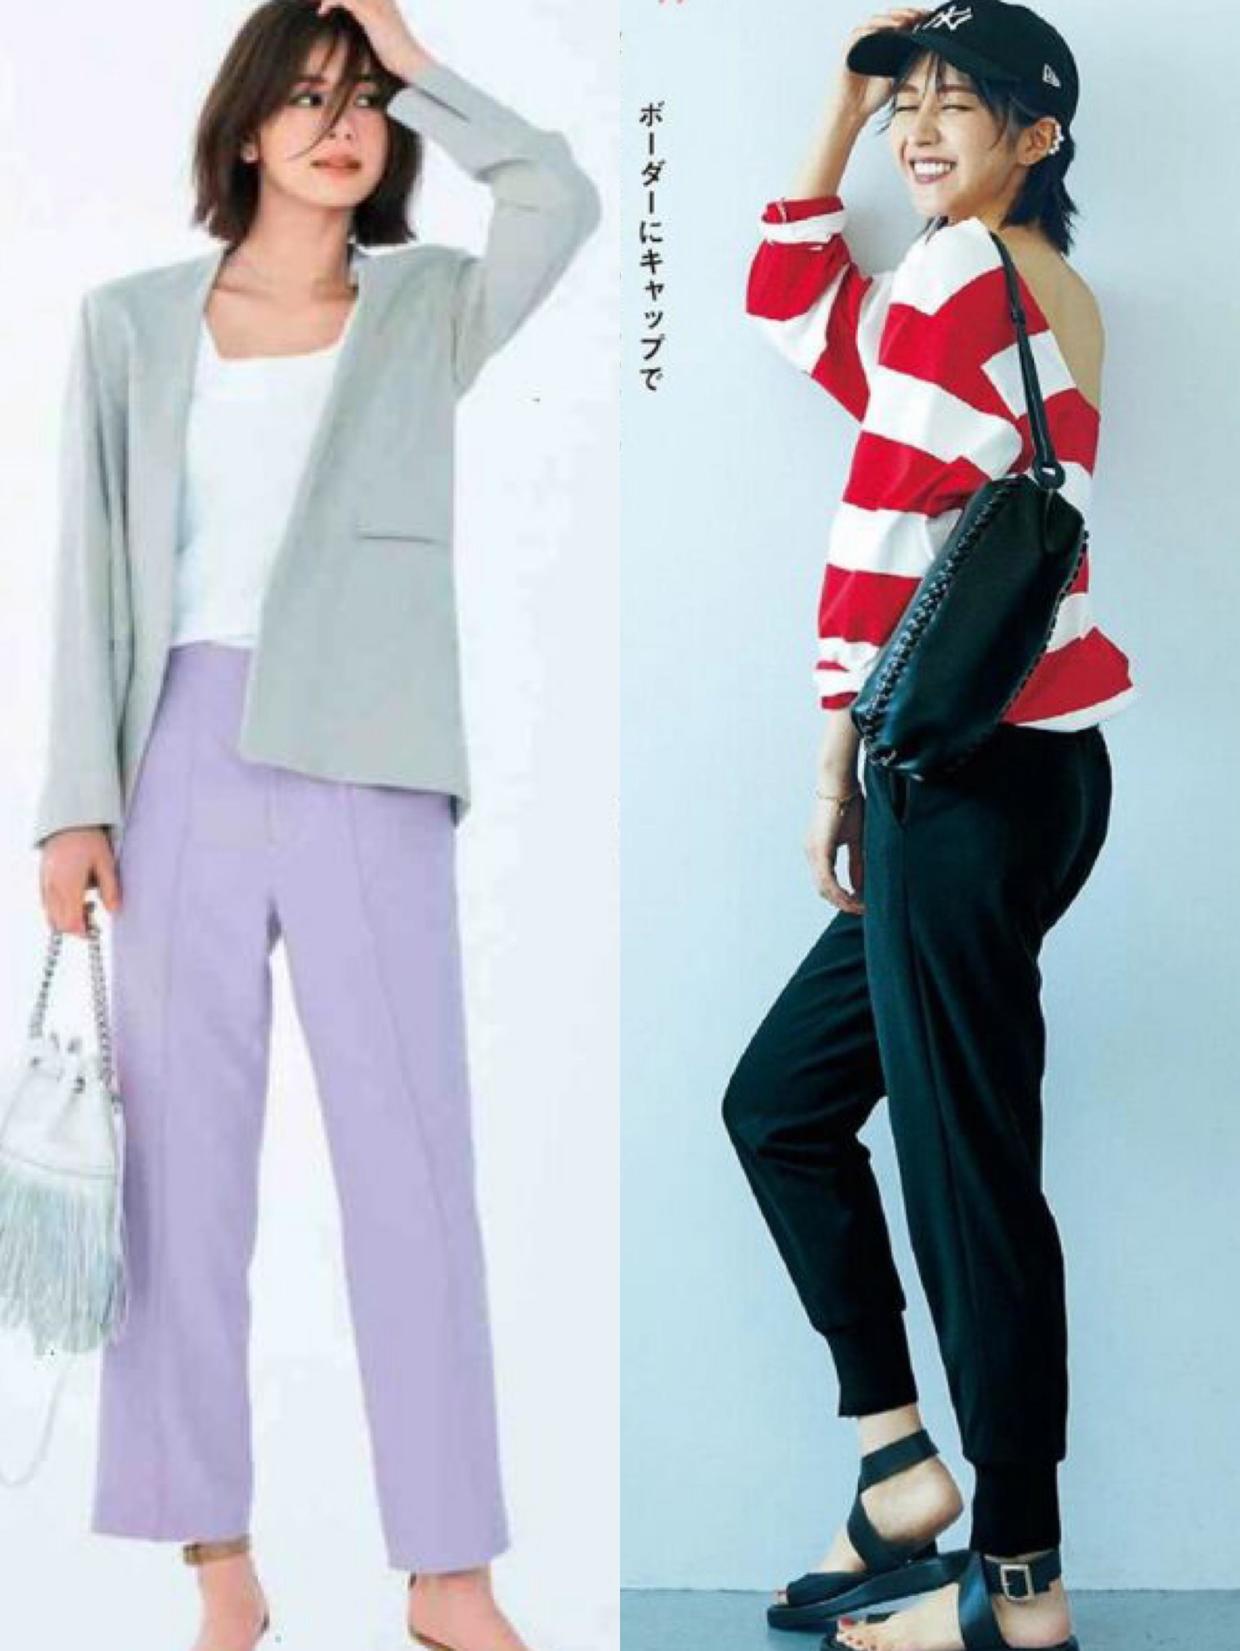 给30+女性提供一些实用的穿搭建议，一起看看日本时髦精的九分裤搭配，变得越来越美吧-爱读书